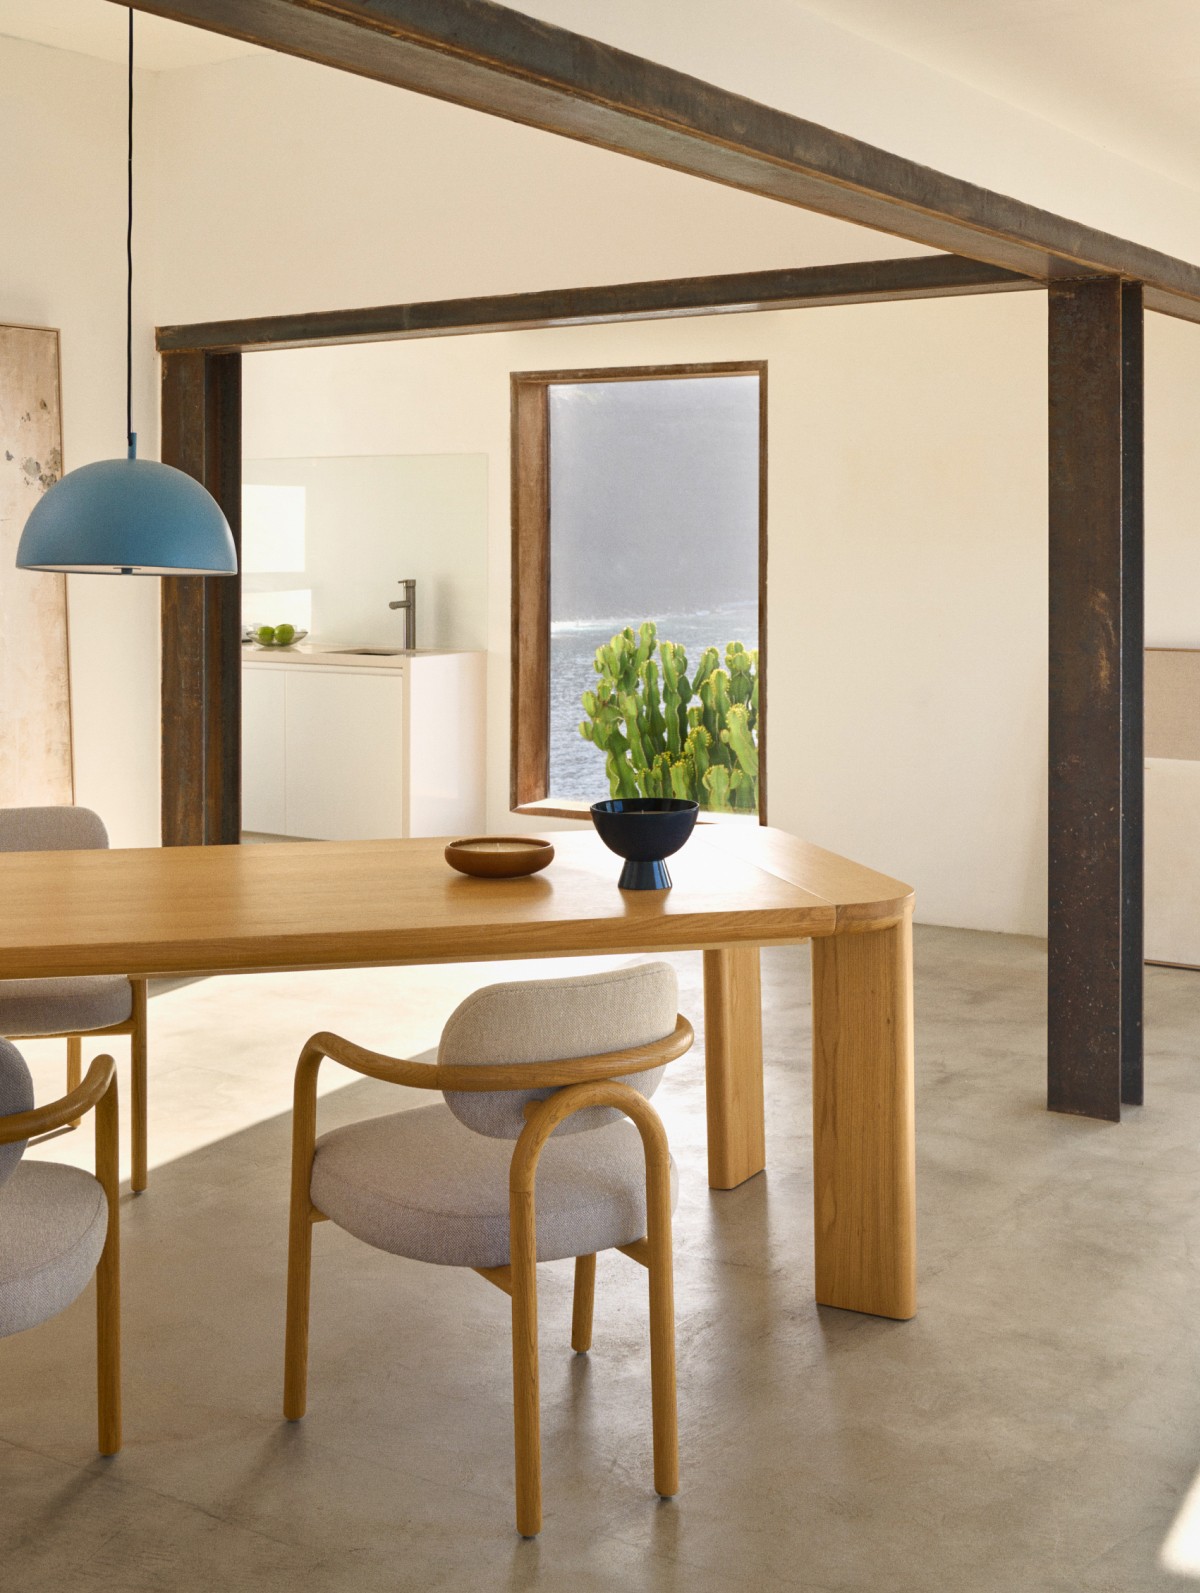 Mesas extensibles hechas para que aproveches al mximo tu espacio. Con una silueta contempornea y un acabado de tonalidades naturales.